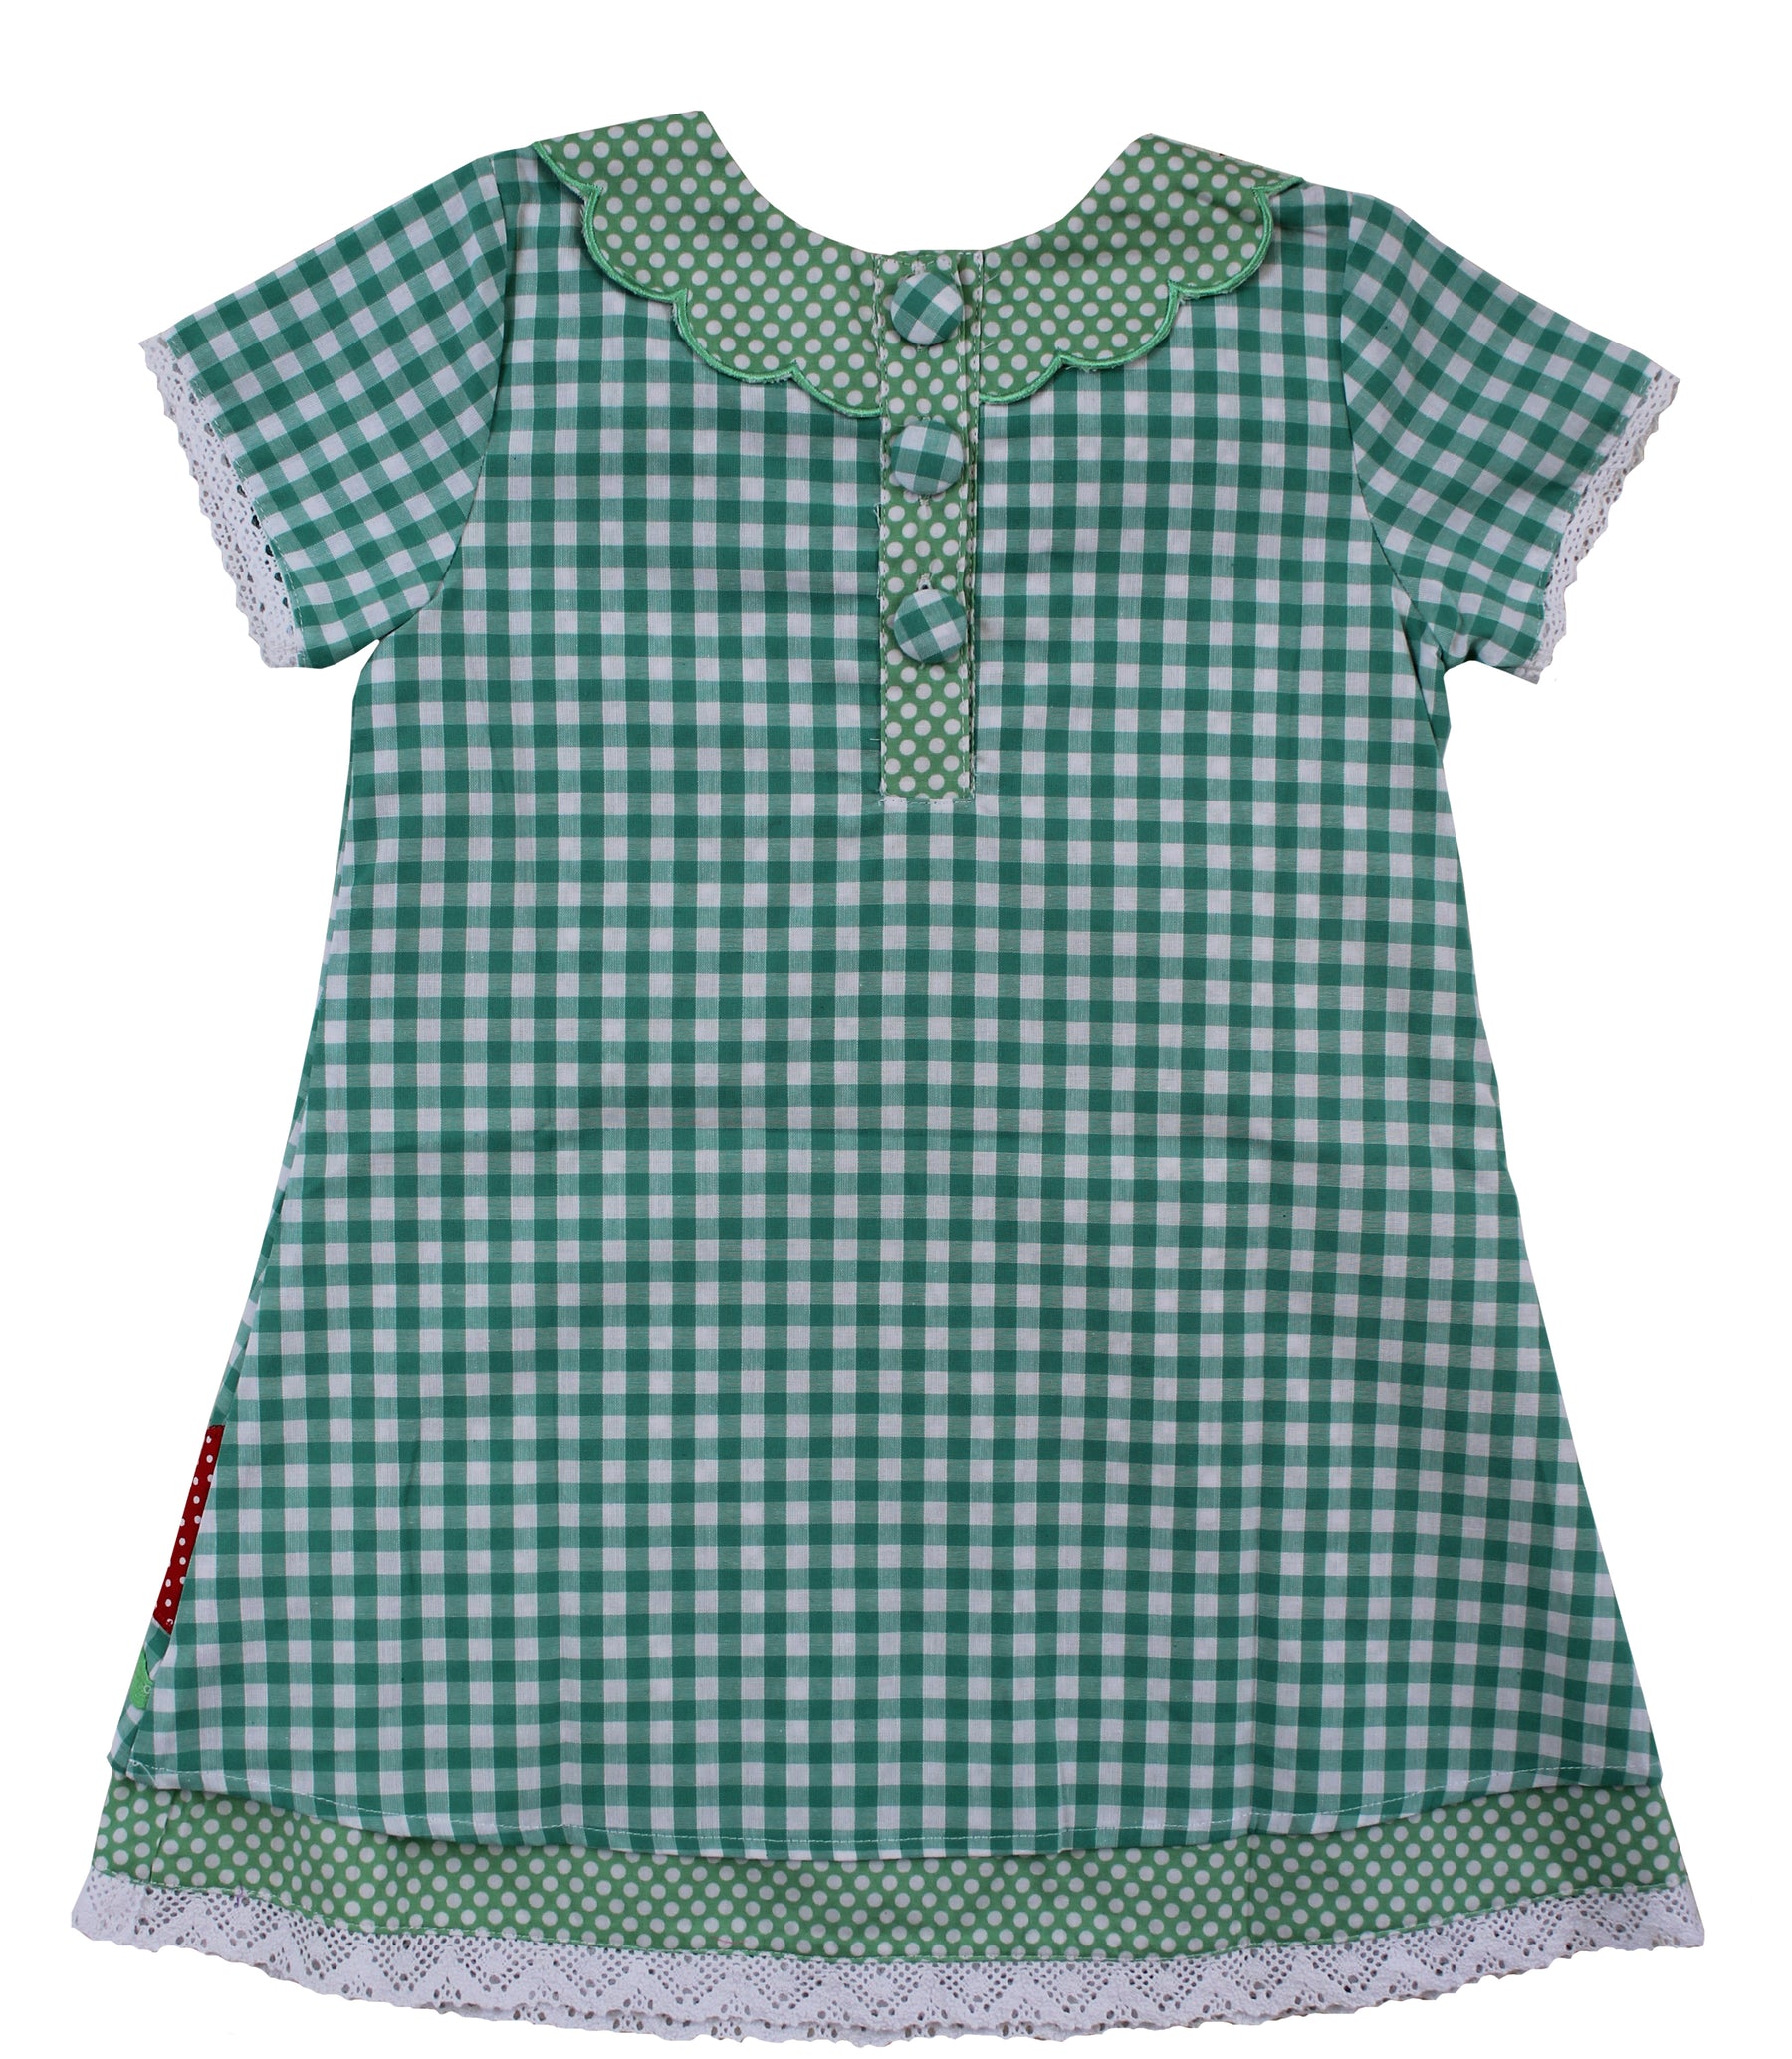 Green Check Ladybird dress